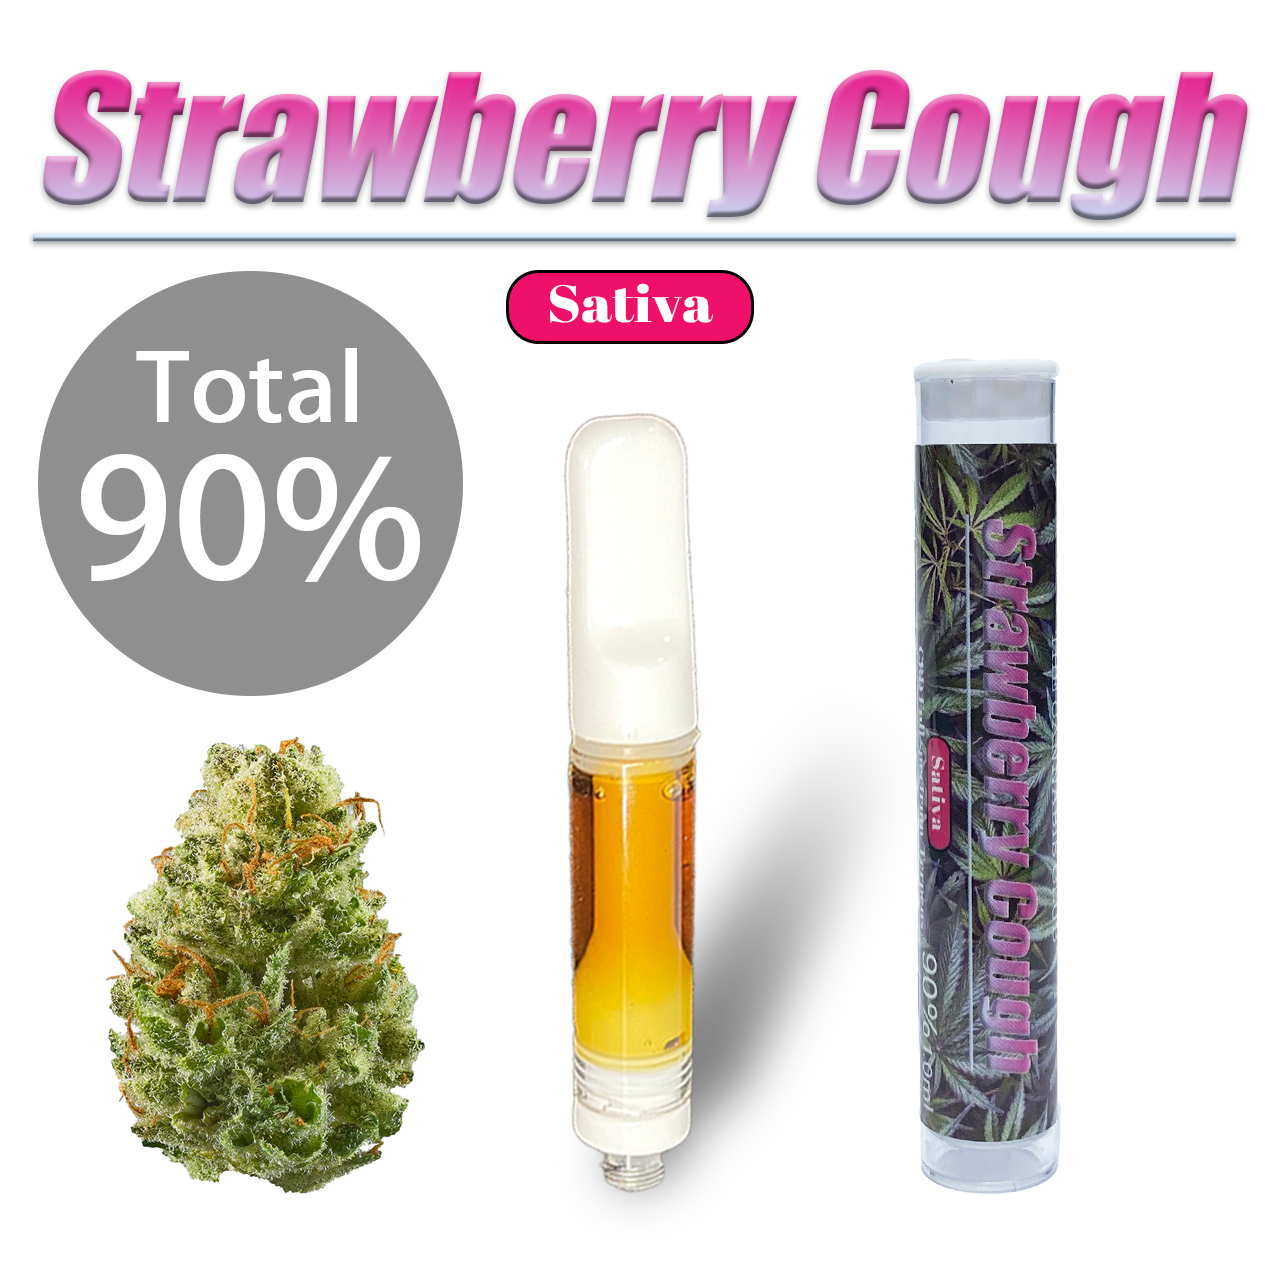 プレミアムCBDリキッド “Strawberry Cough”90% 1.0ml - メルカリShops